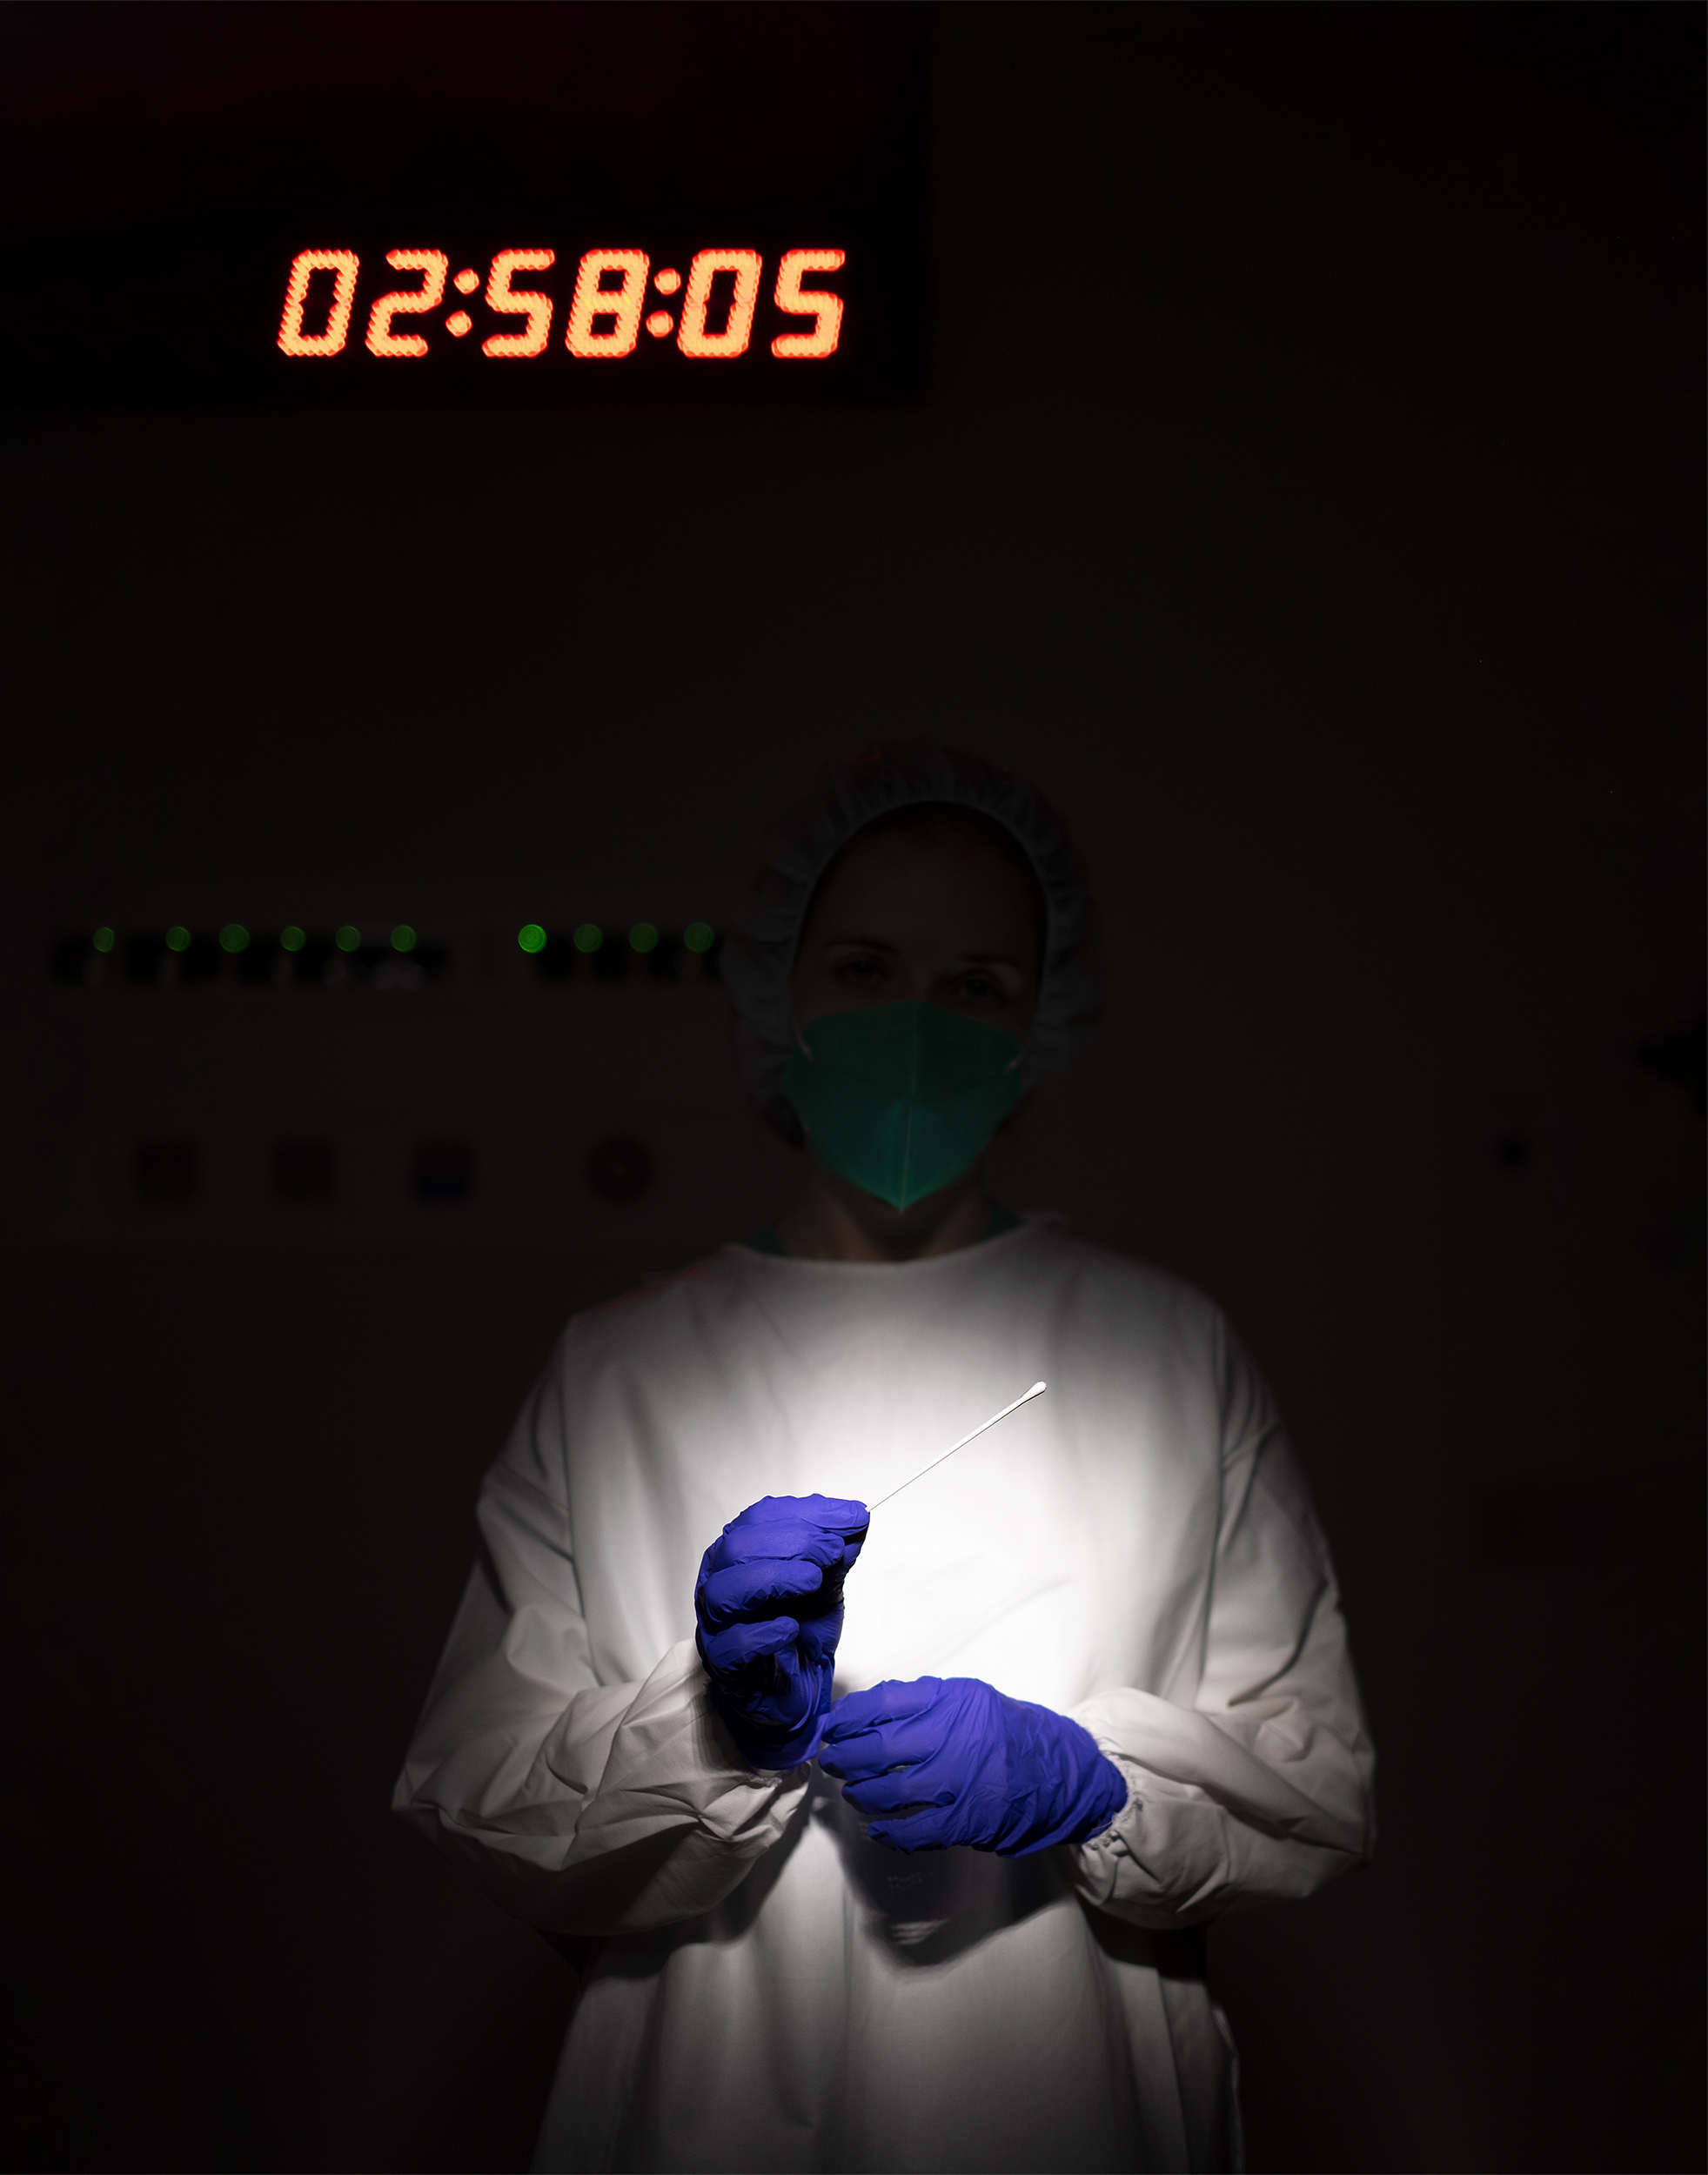 Enfermeira em ambiente escuro com equipamento de proteção individual segura zaragatoa com luvas.